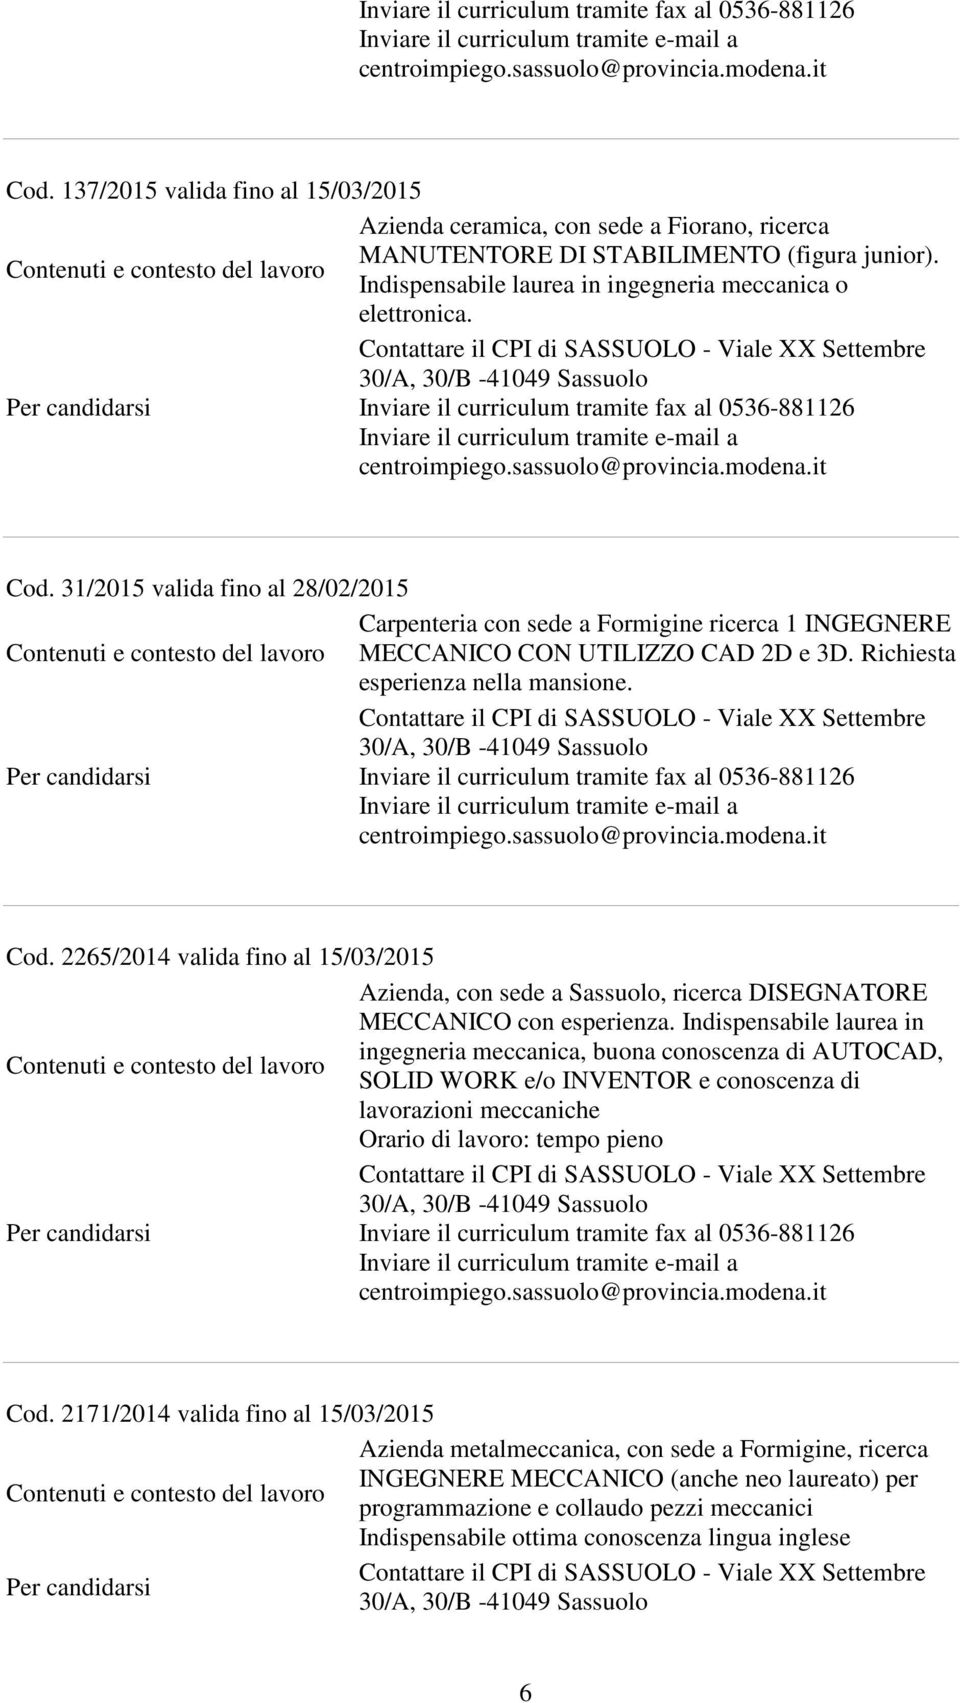 2265/2014 valida fino al 15/03/2015 Azienda, con sede a Sassuolo, ricerca DISEGNATORE MECCANICO con esperienza.